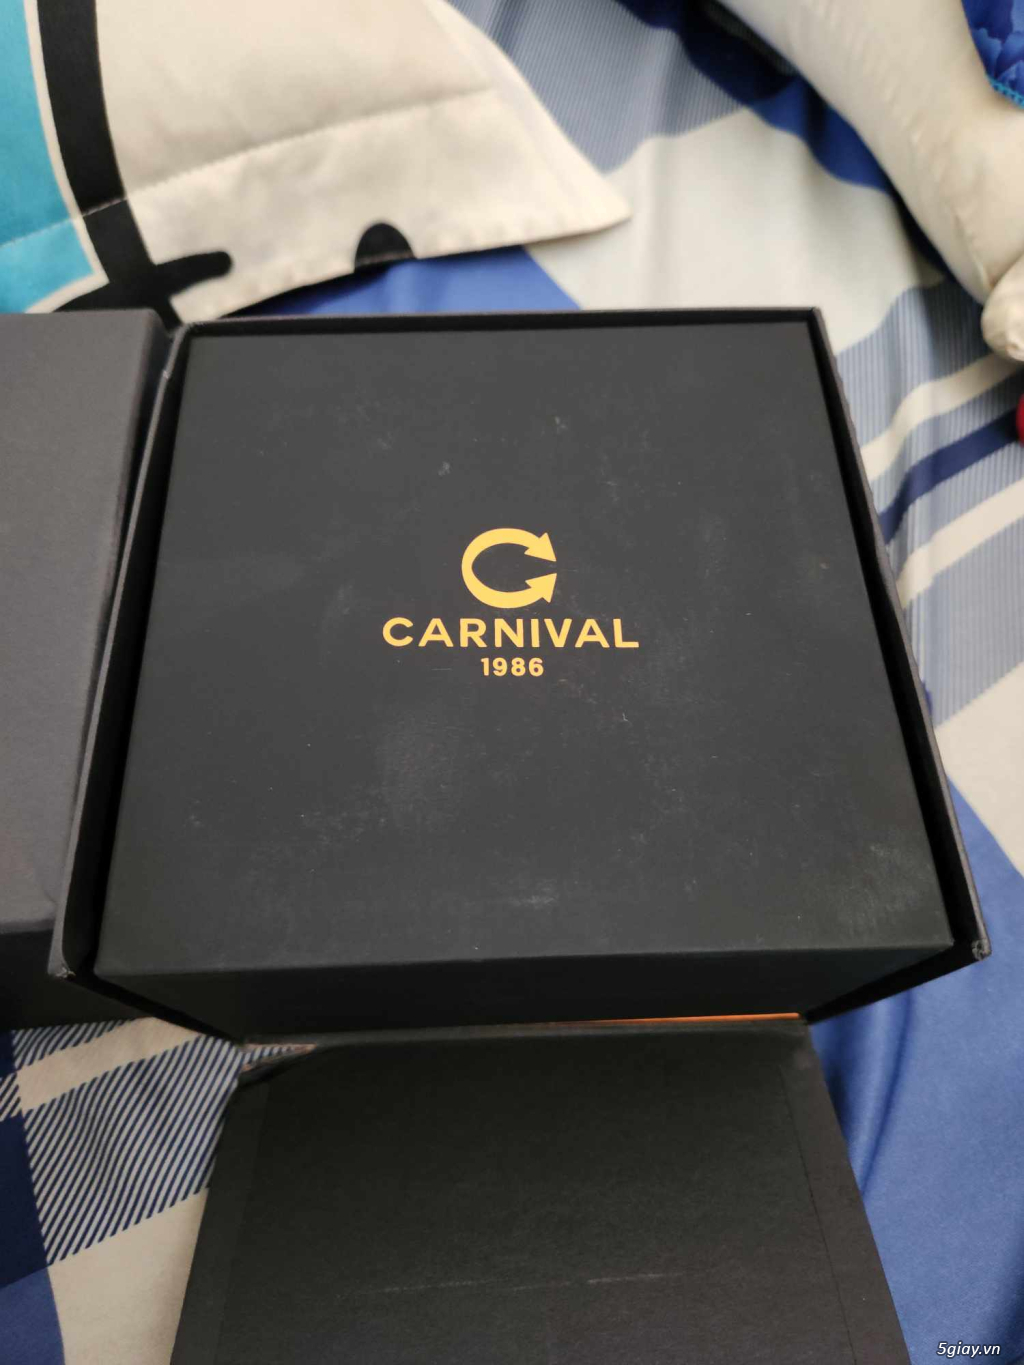 Cần pass lại đồng hồ carnival new full box - 1